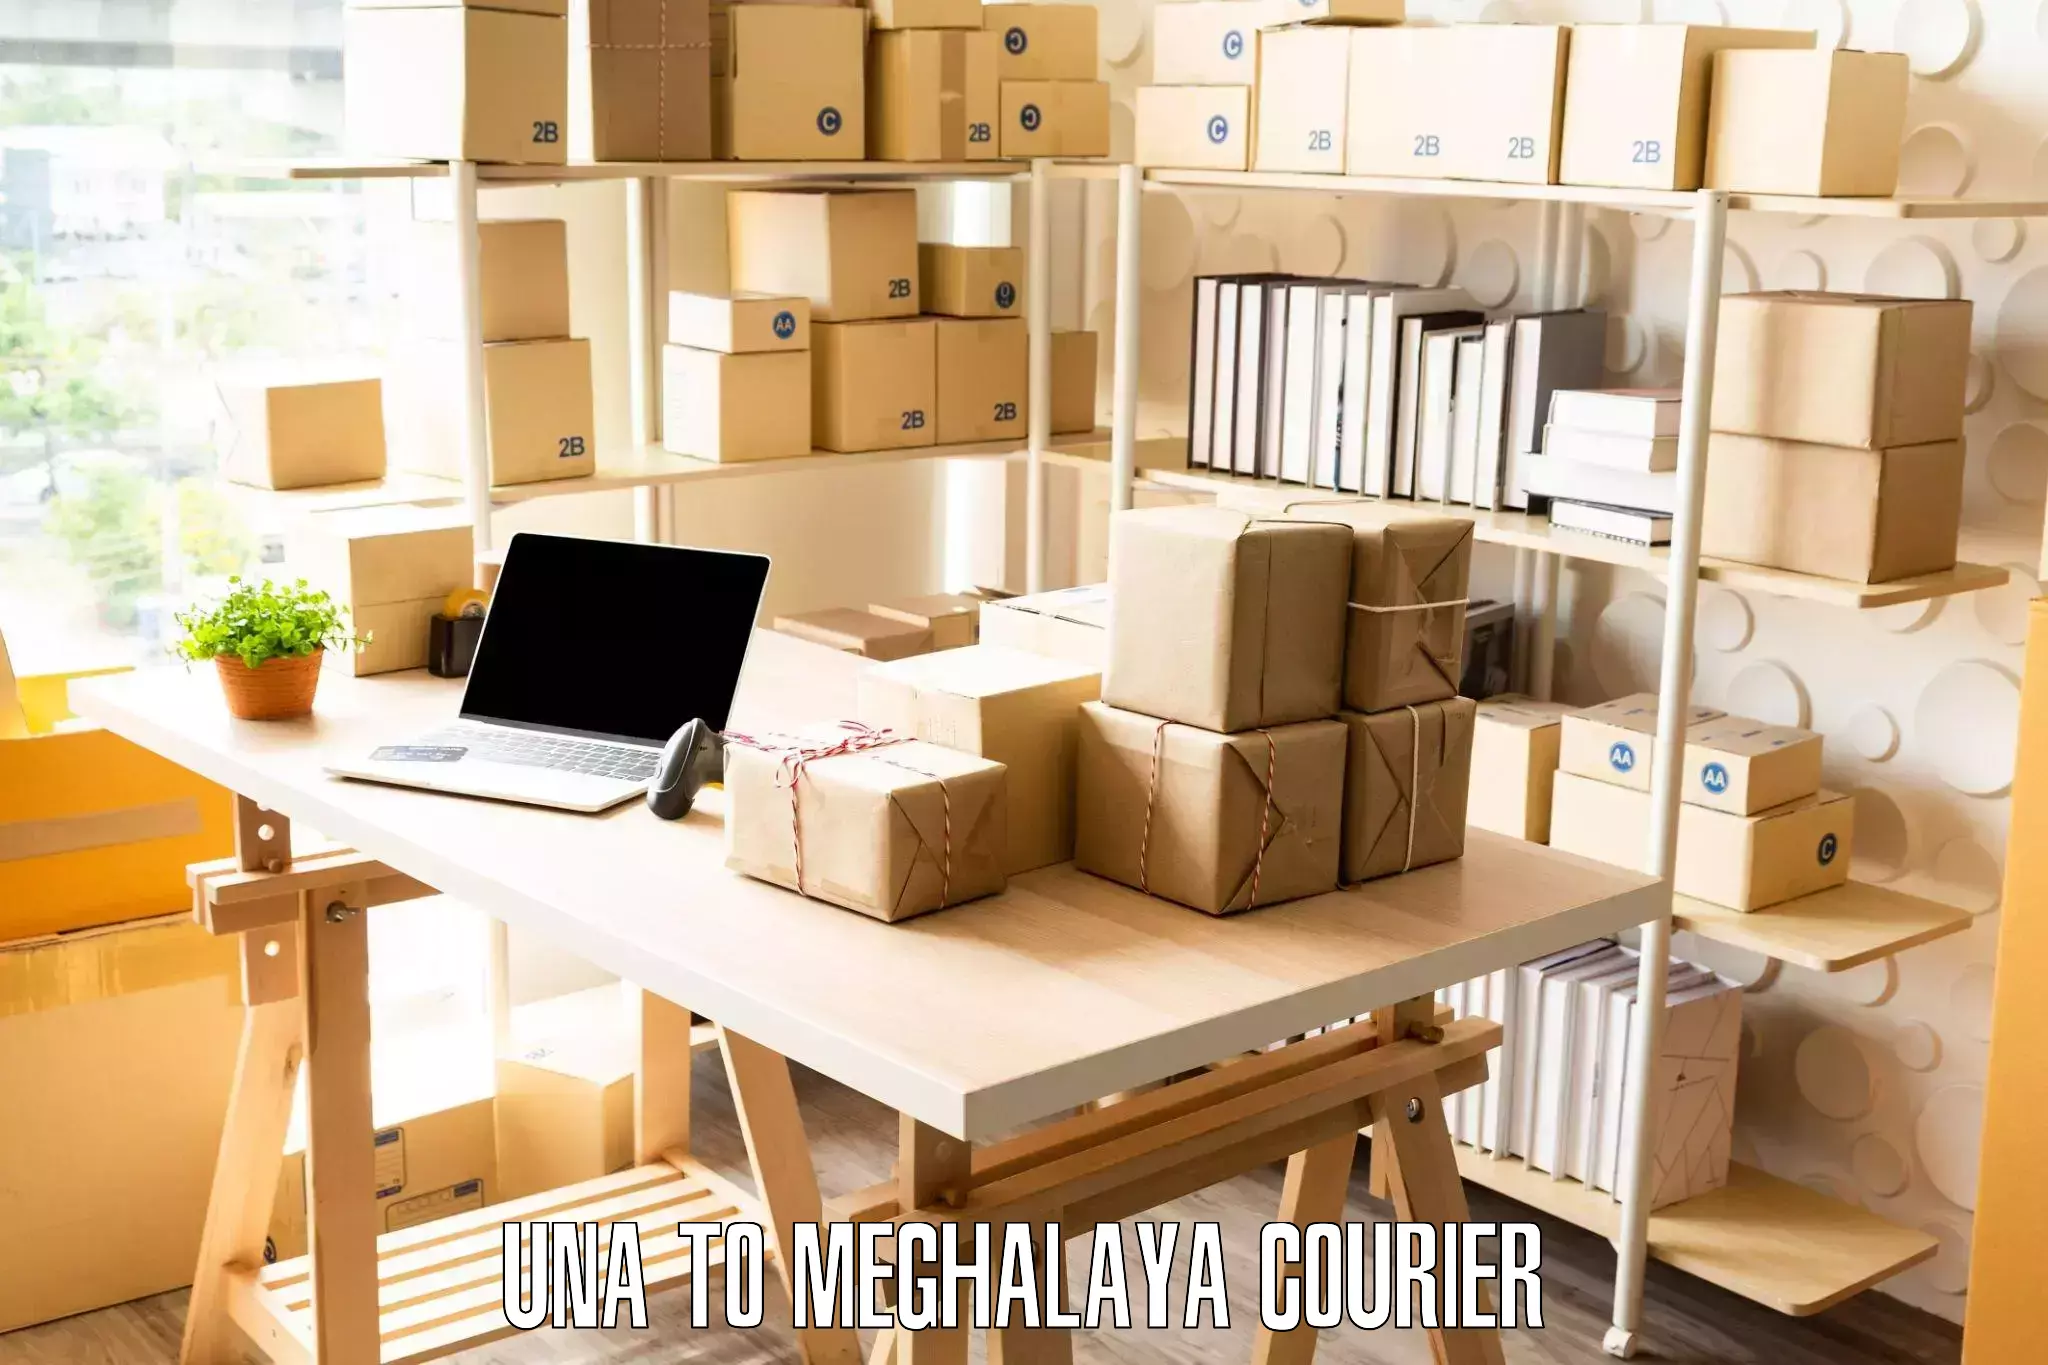 Furniture transport specialists Una to NIT Meghalaya